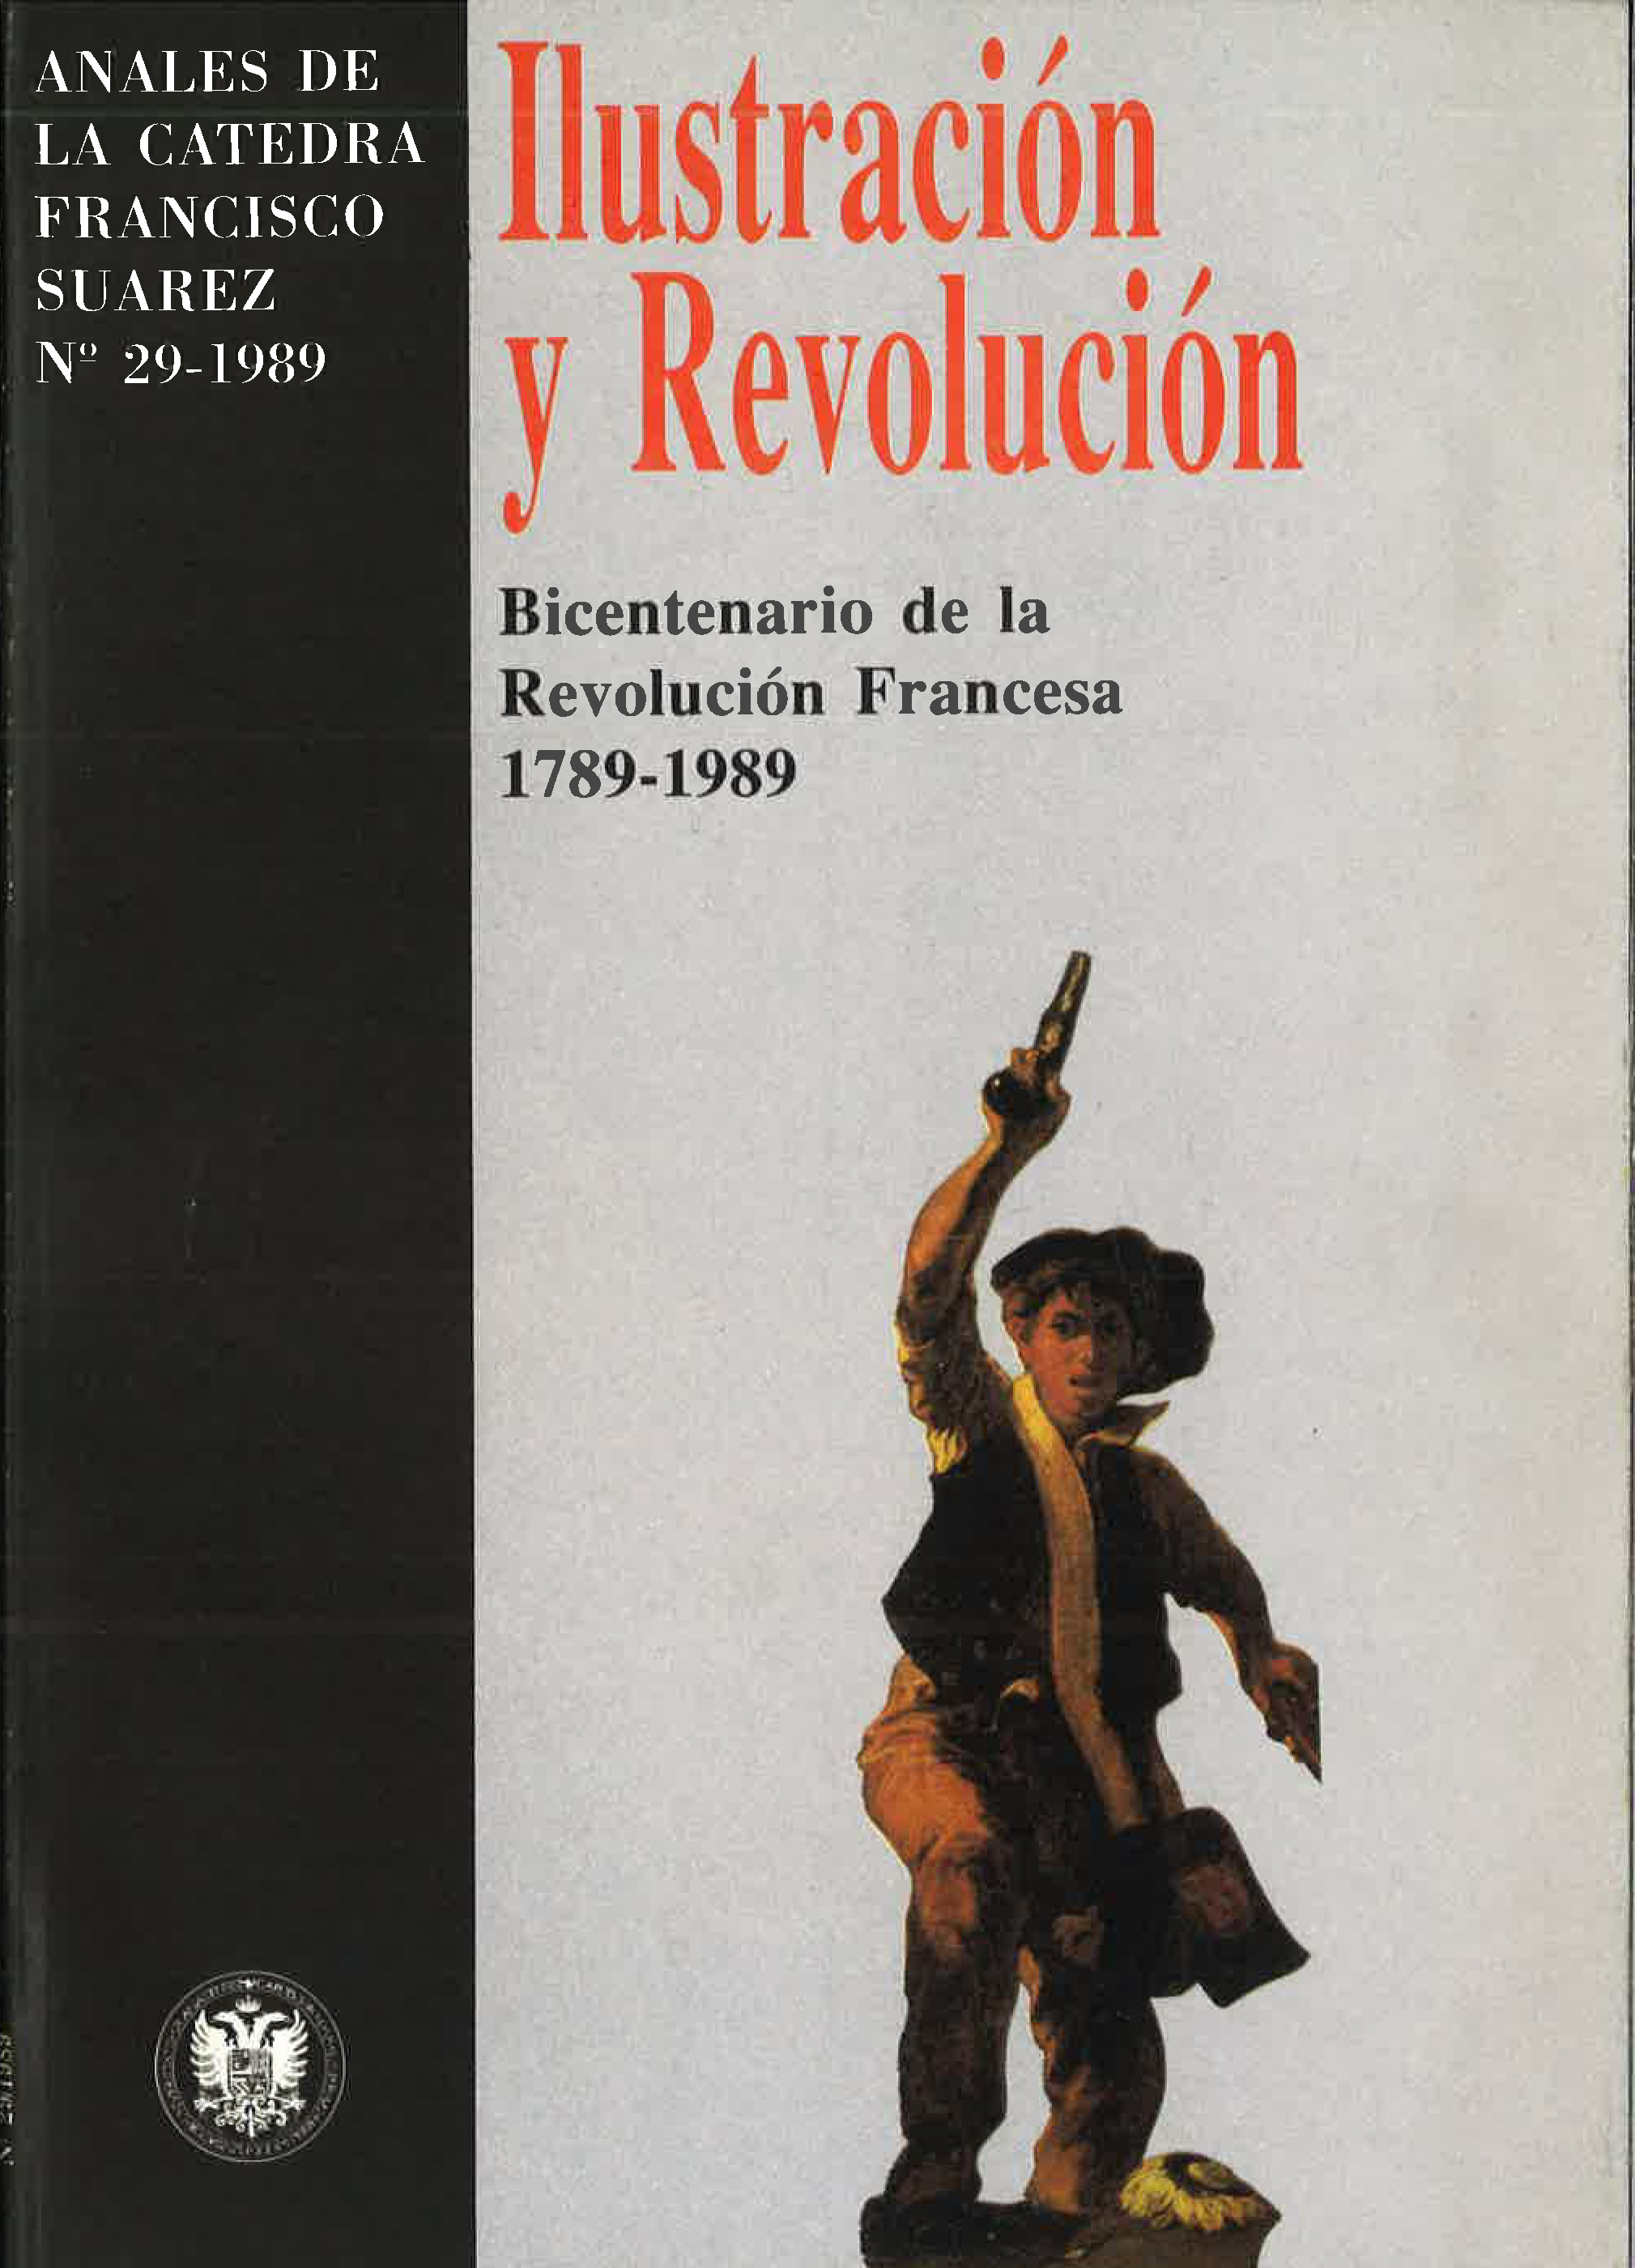 					View Vol. 29 (1989): Ilustración y Revolución. 1789-1989 Bicentenario de la Revolución Francesa
				